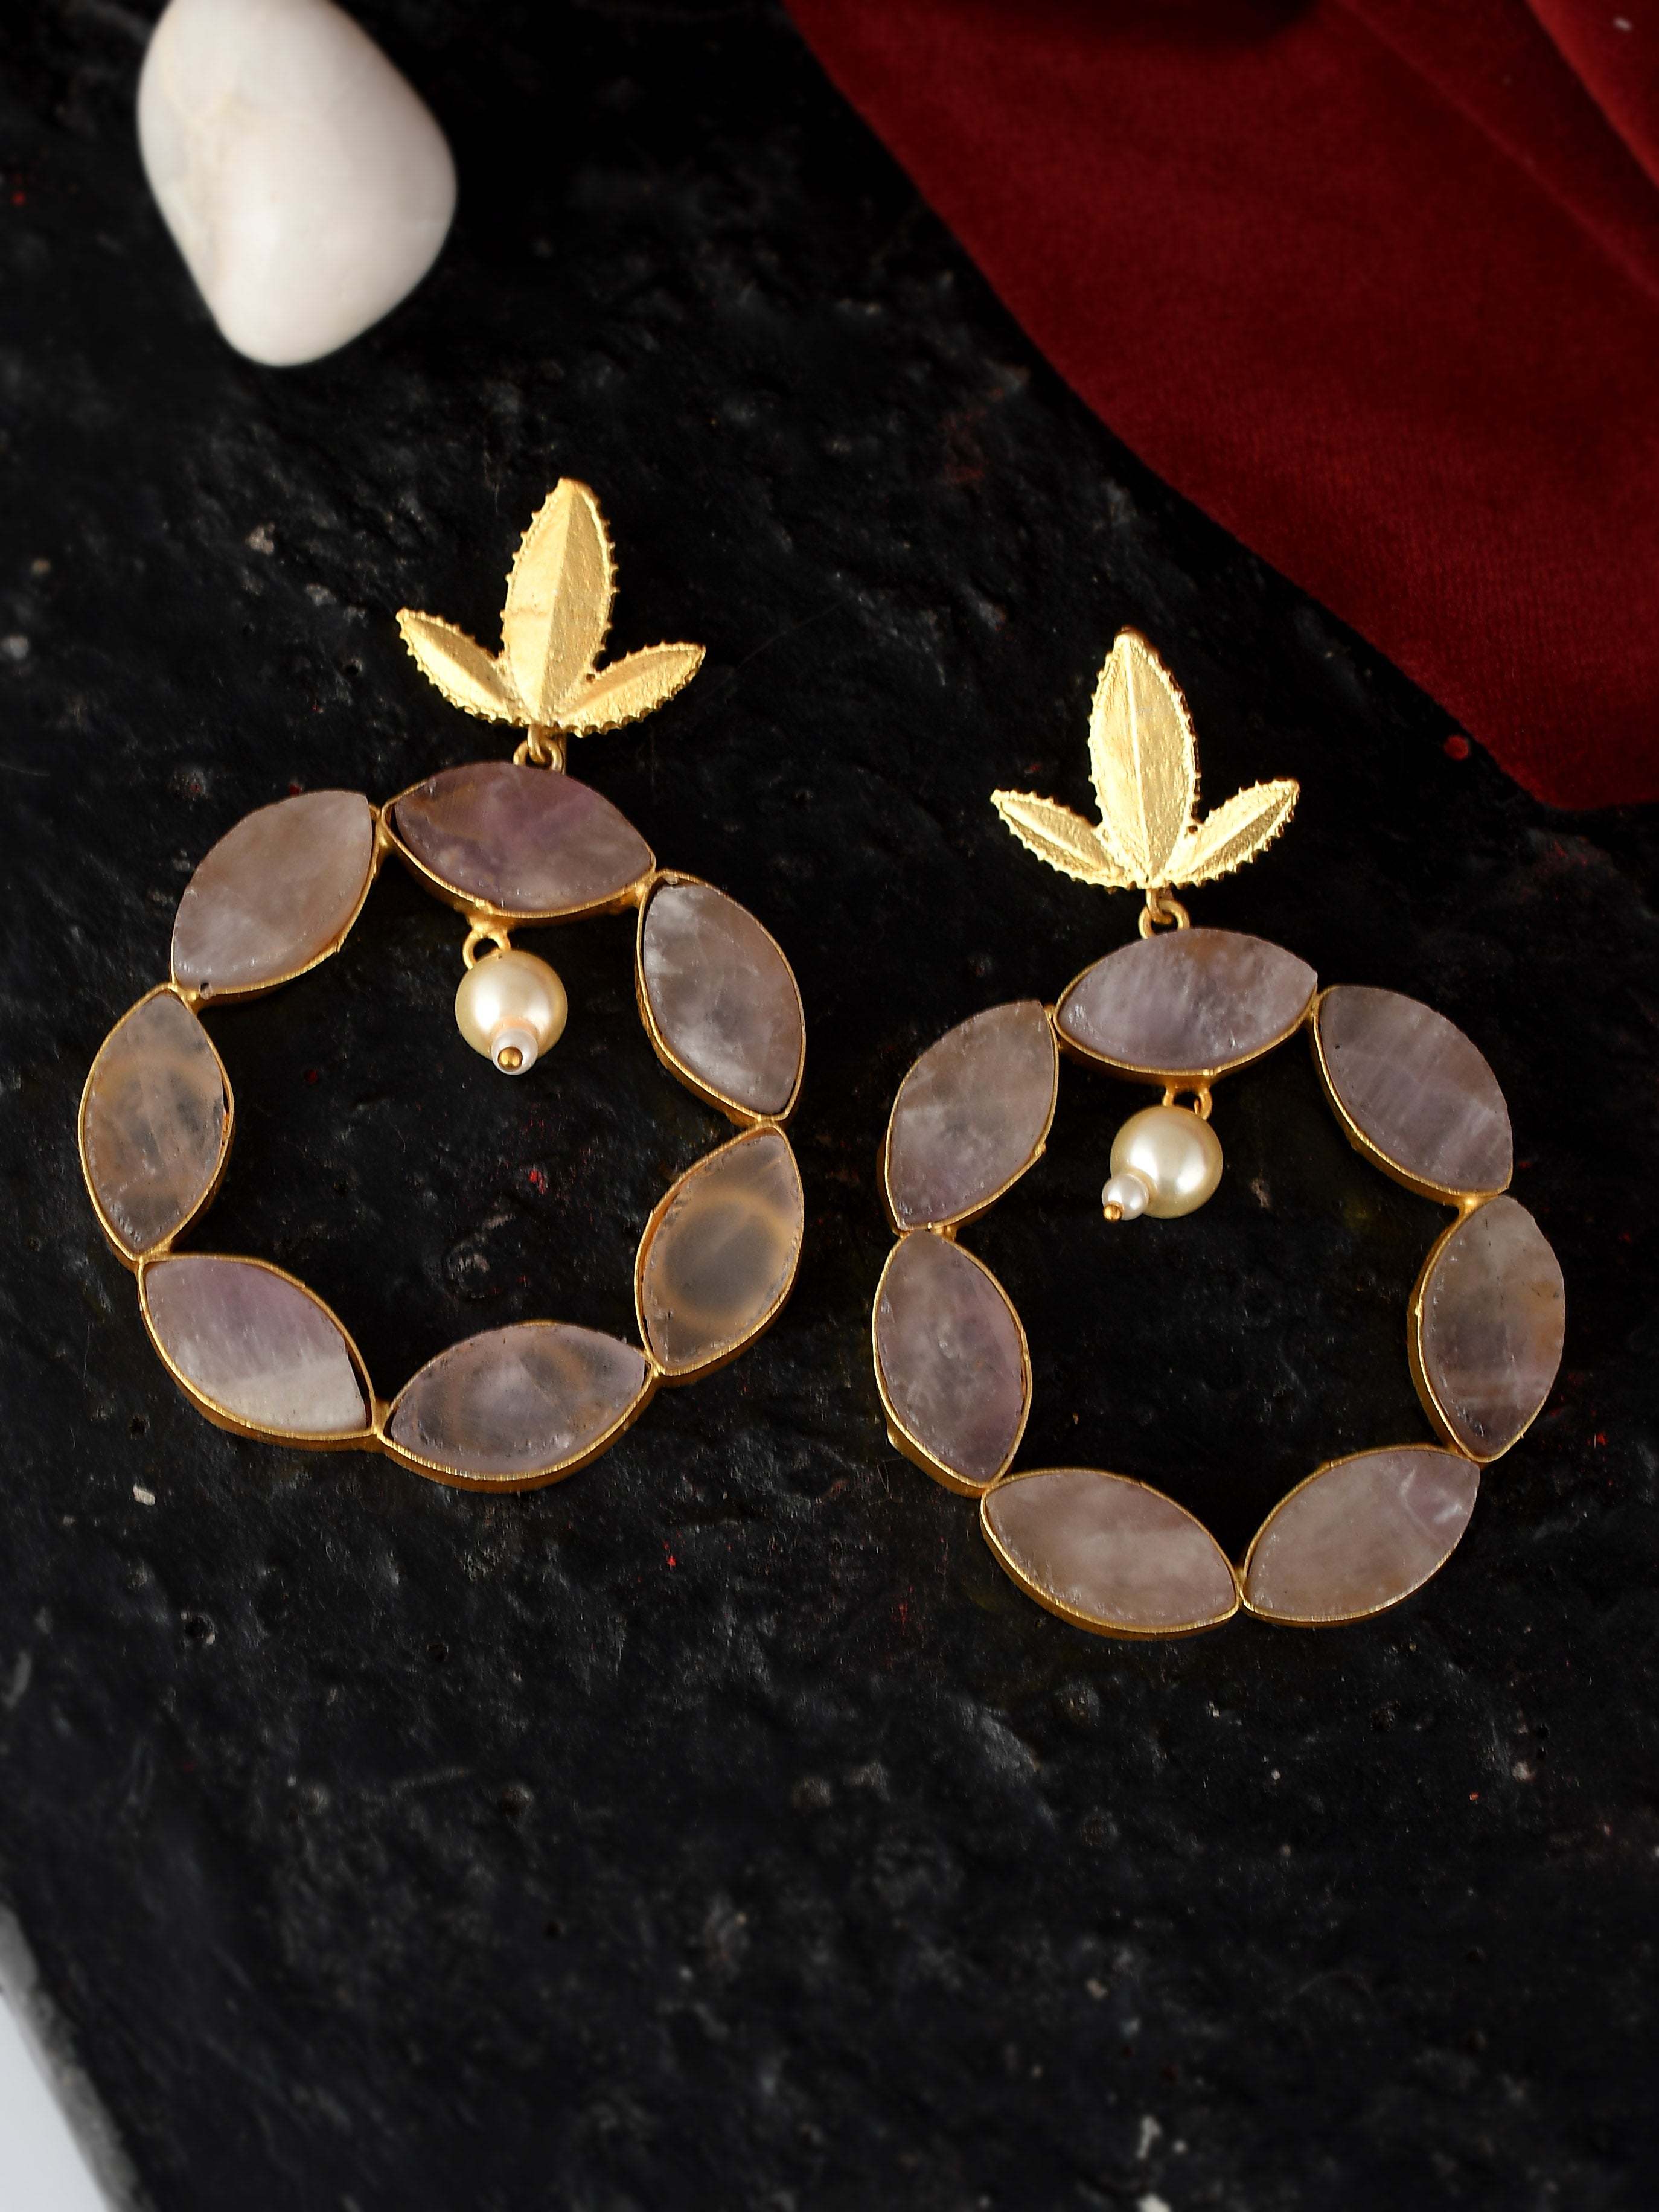 Buy long party wear golden stone fancy earrings Online at Best Prices in  India - JioMart.